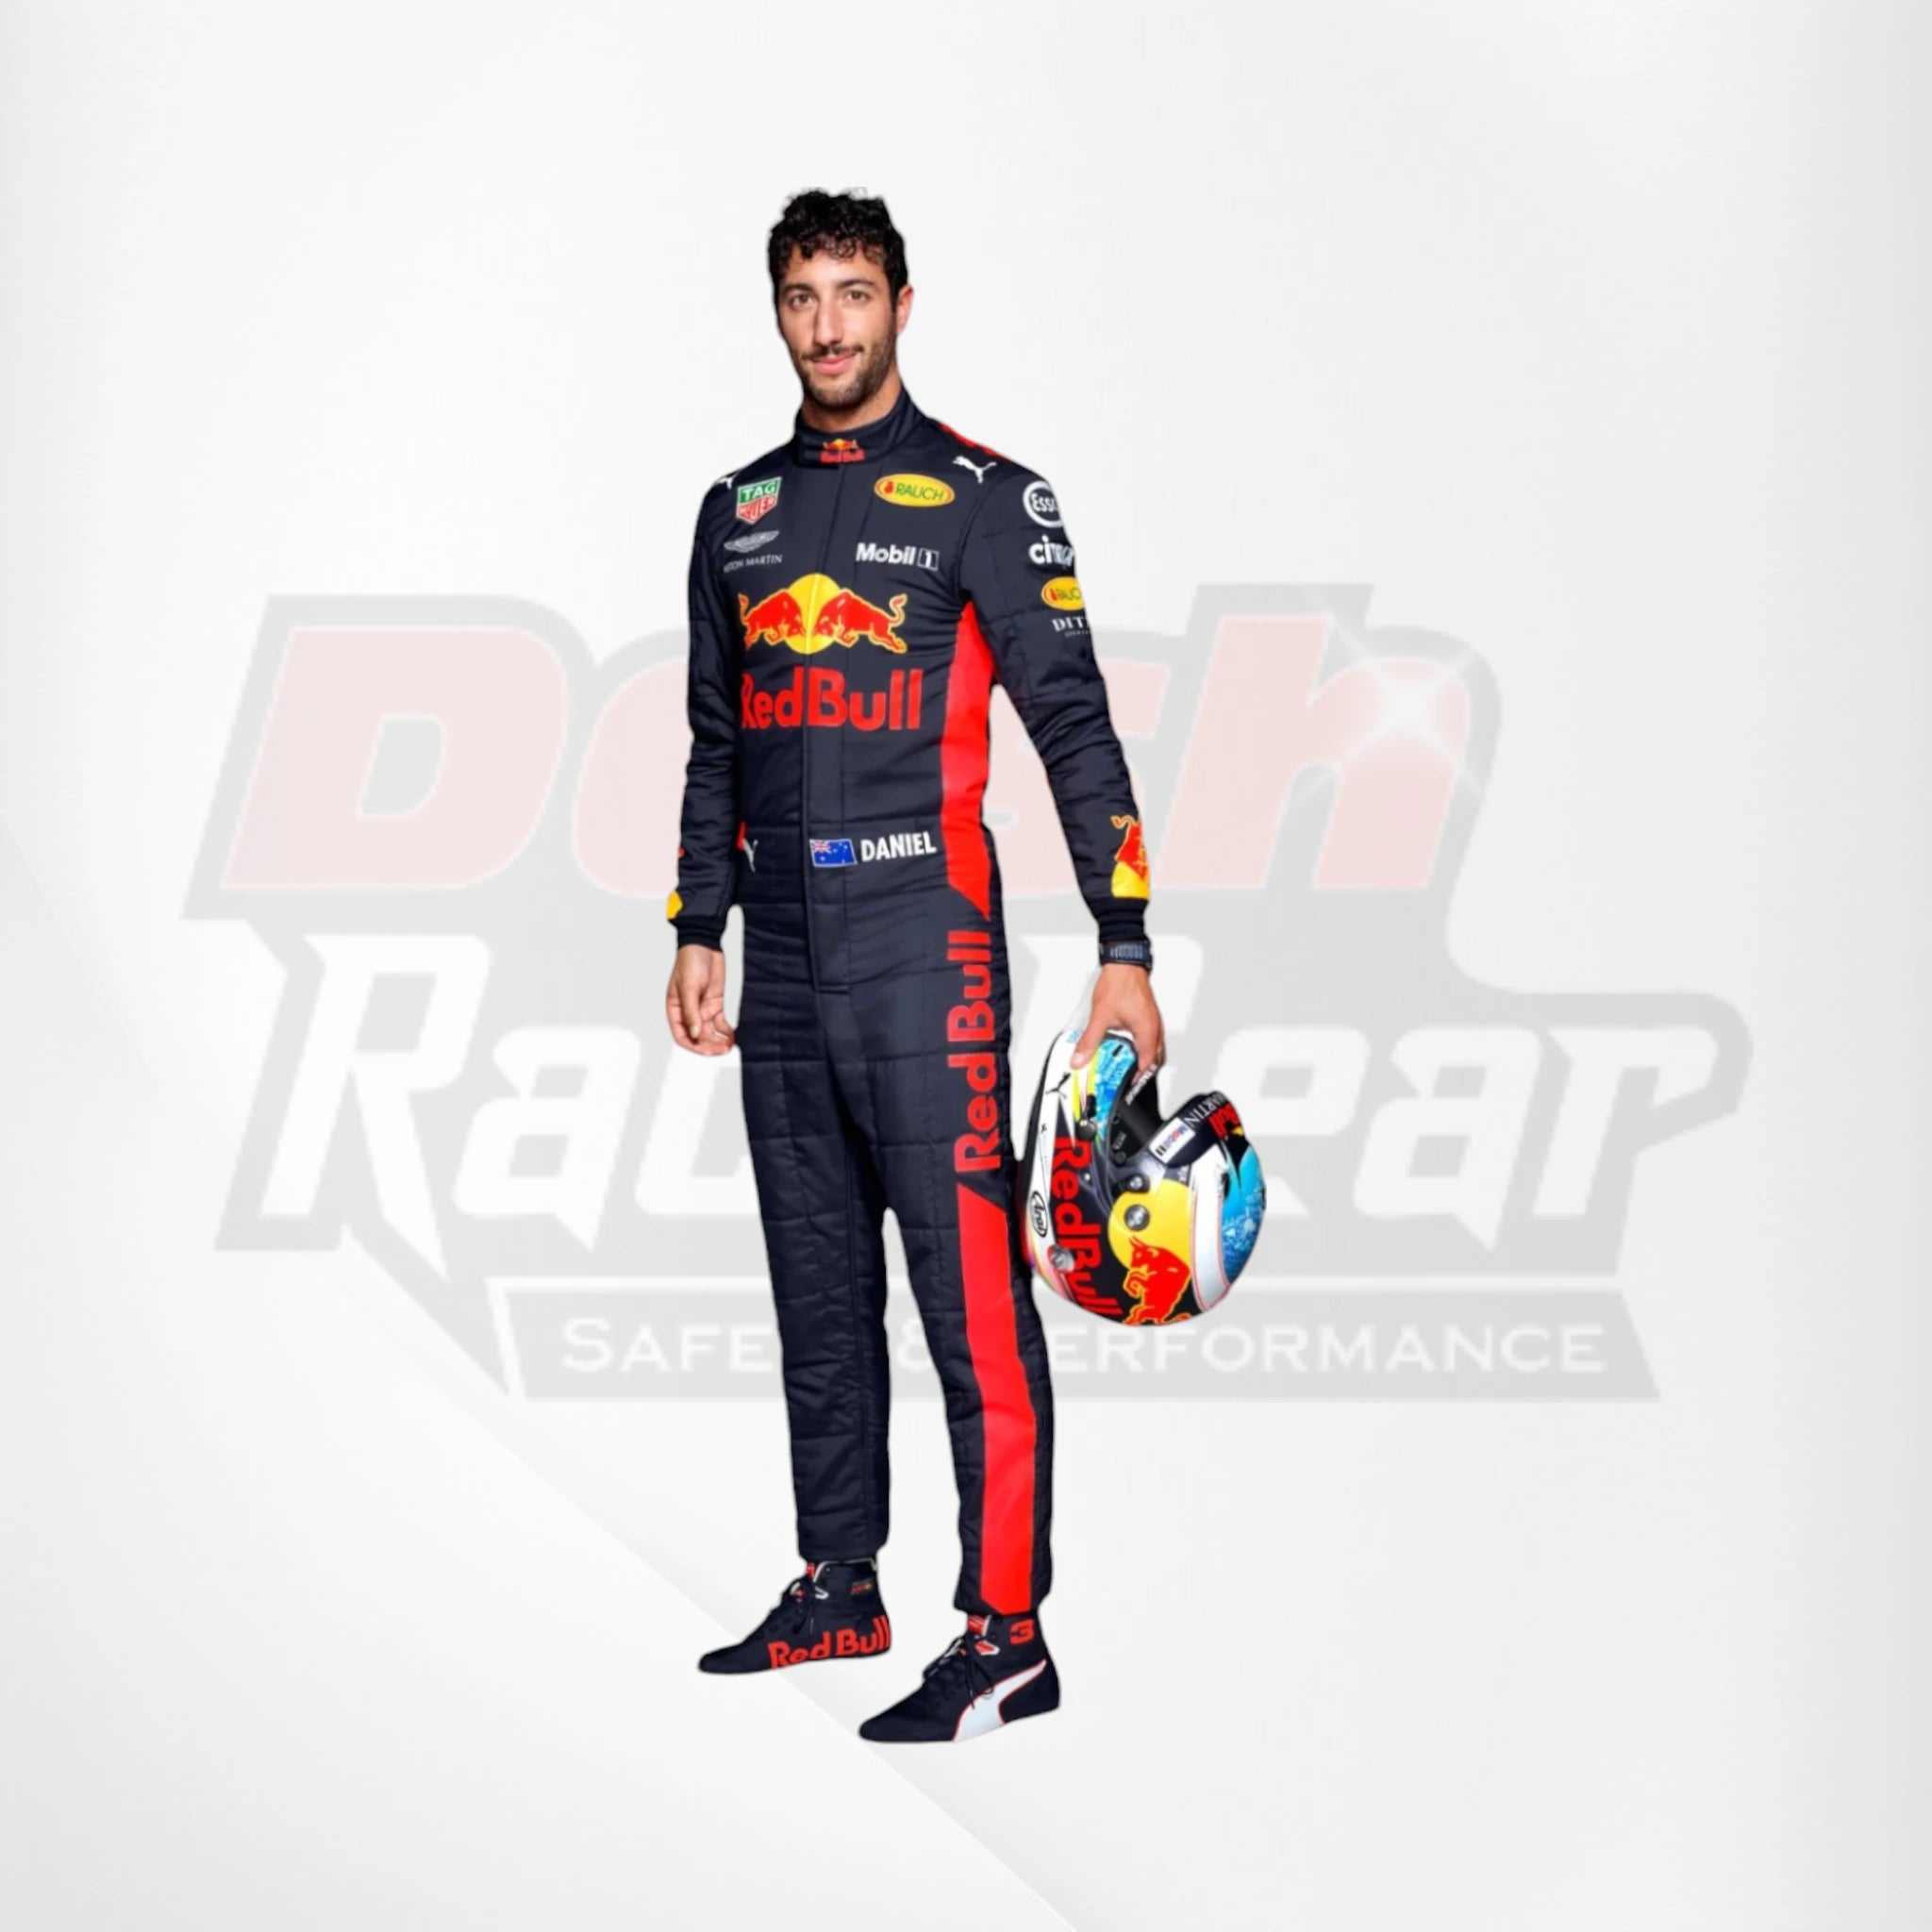 2018 Red Bull Daniel Ricciardo Formula 1 Race Suit